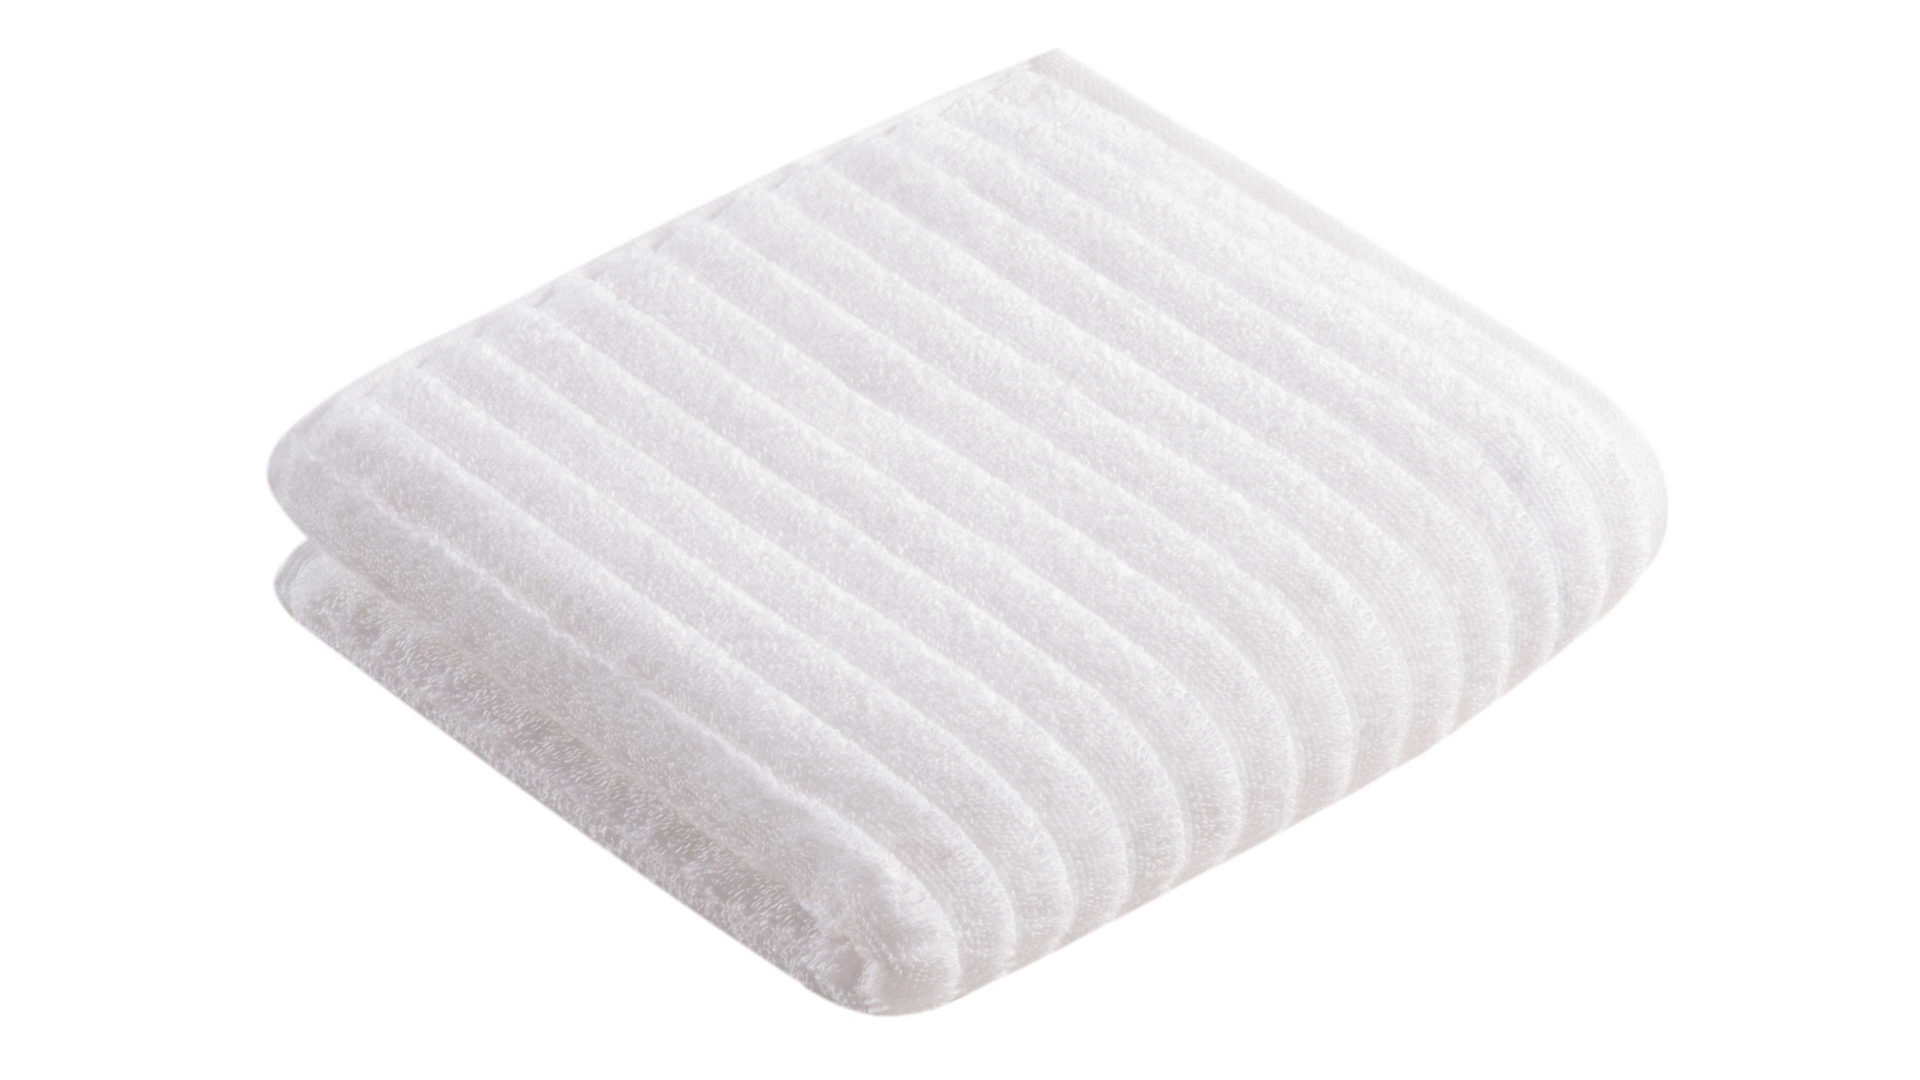 Handtuch Vossen aus Naturfaser in Weiß VOSSEN® Frottee-Serie Mystic - Handtuch weiße Baumwolle - ca. 60 x 110 cm